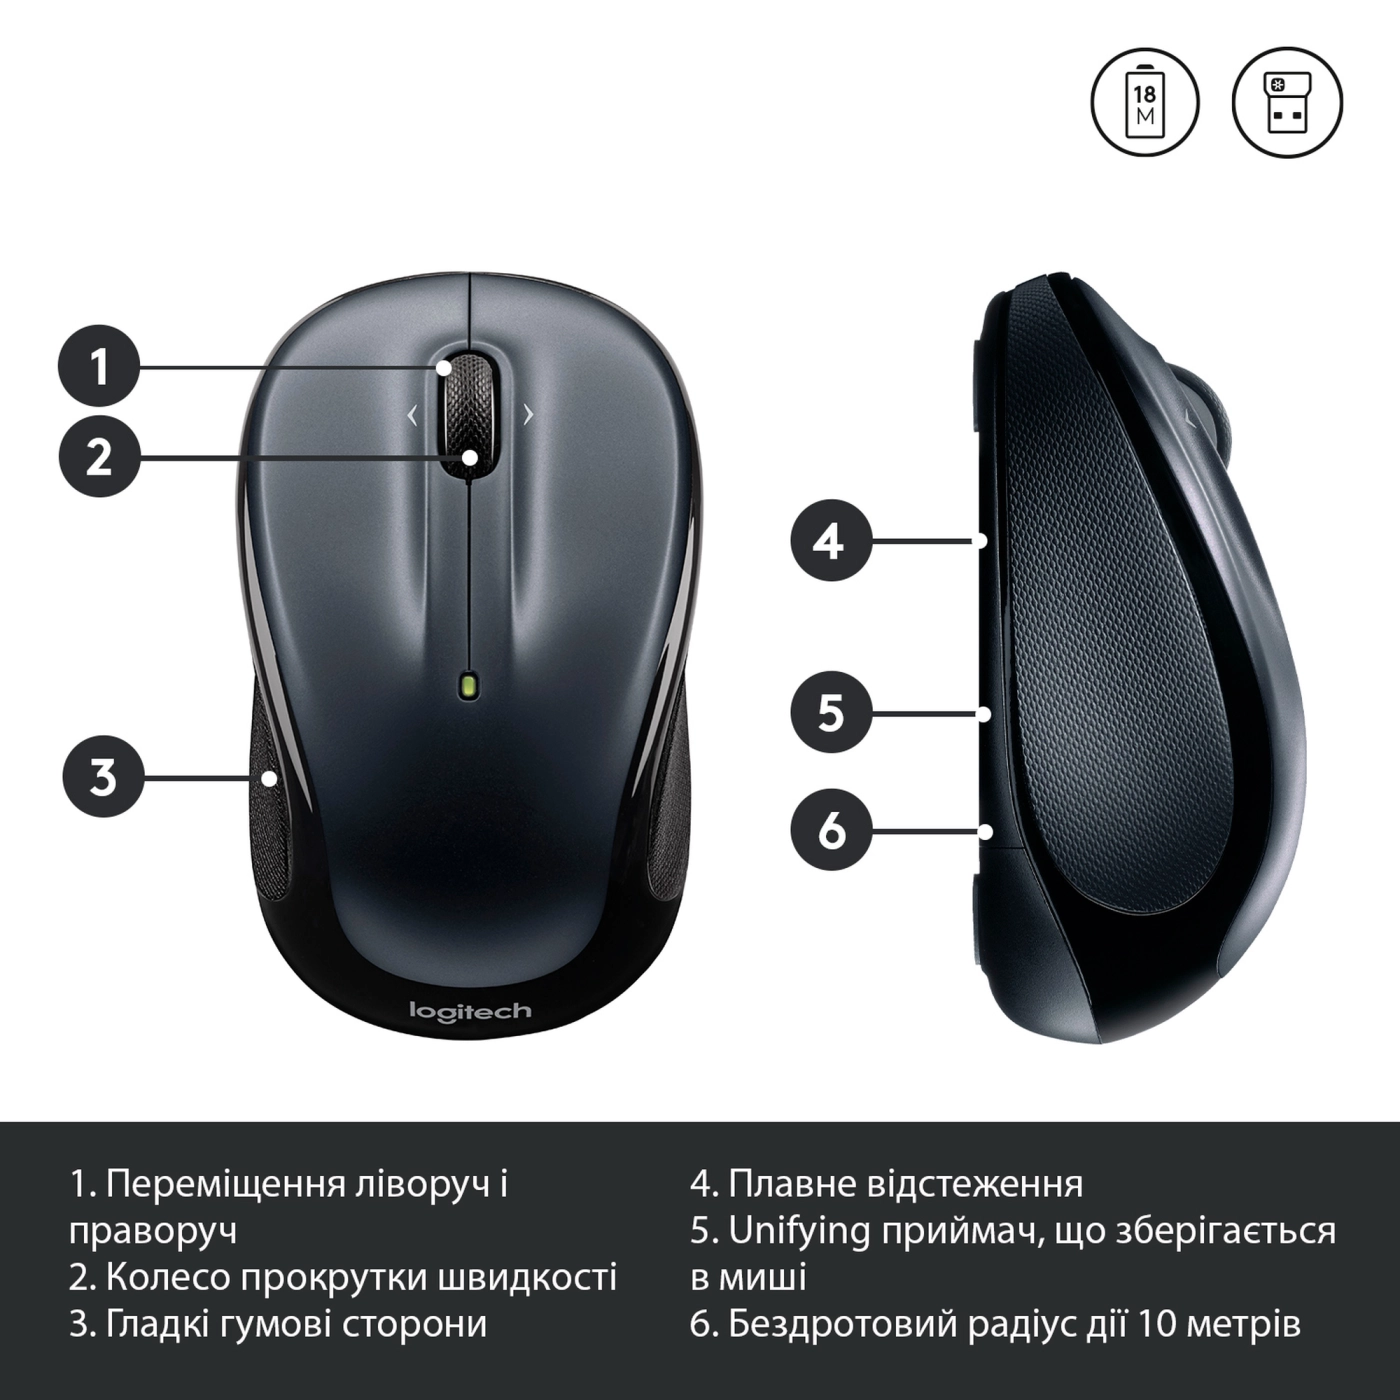 Купить Мышь Logitech Wireless Mouse M325s dark-silver 2.4GHZ (910-006812) - фото 6